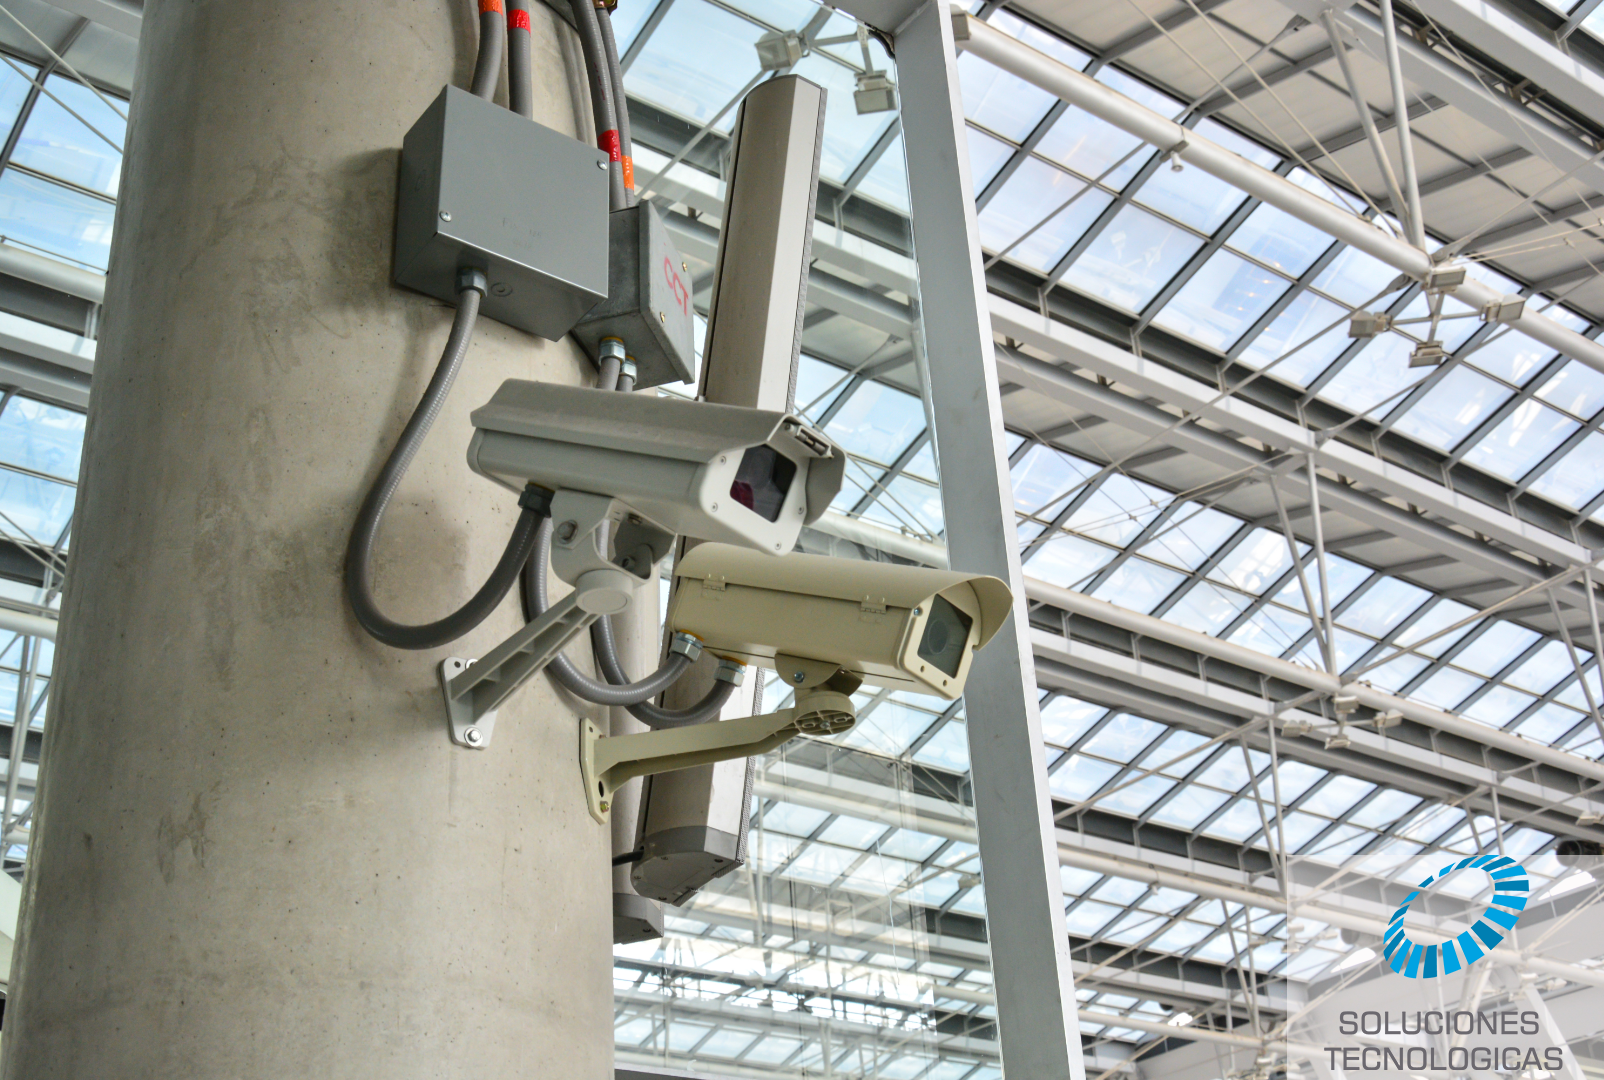 Instalacion de camaras de vigilancia cctv en centros comerciales oficinas y hogar -soluciones tecnologicas